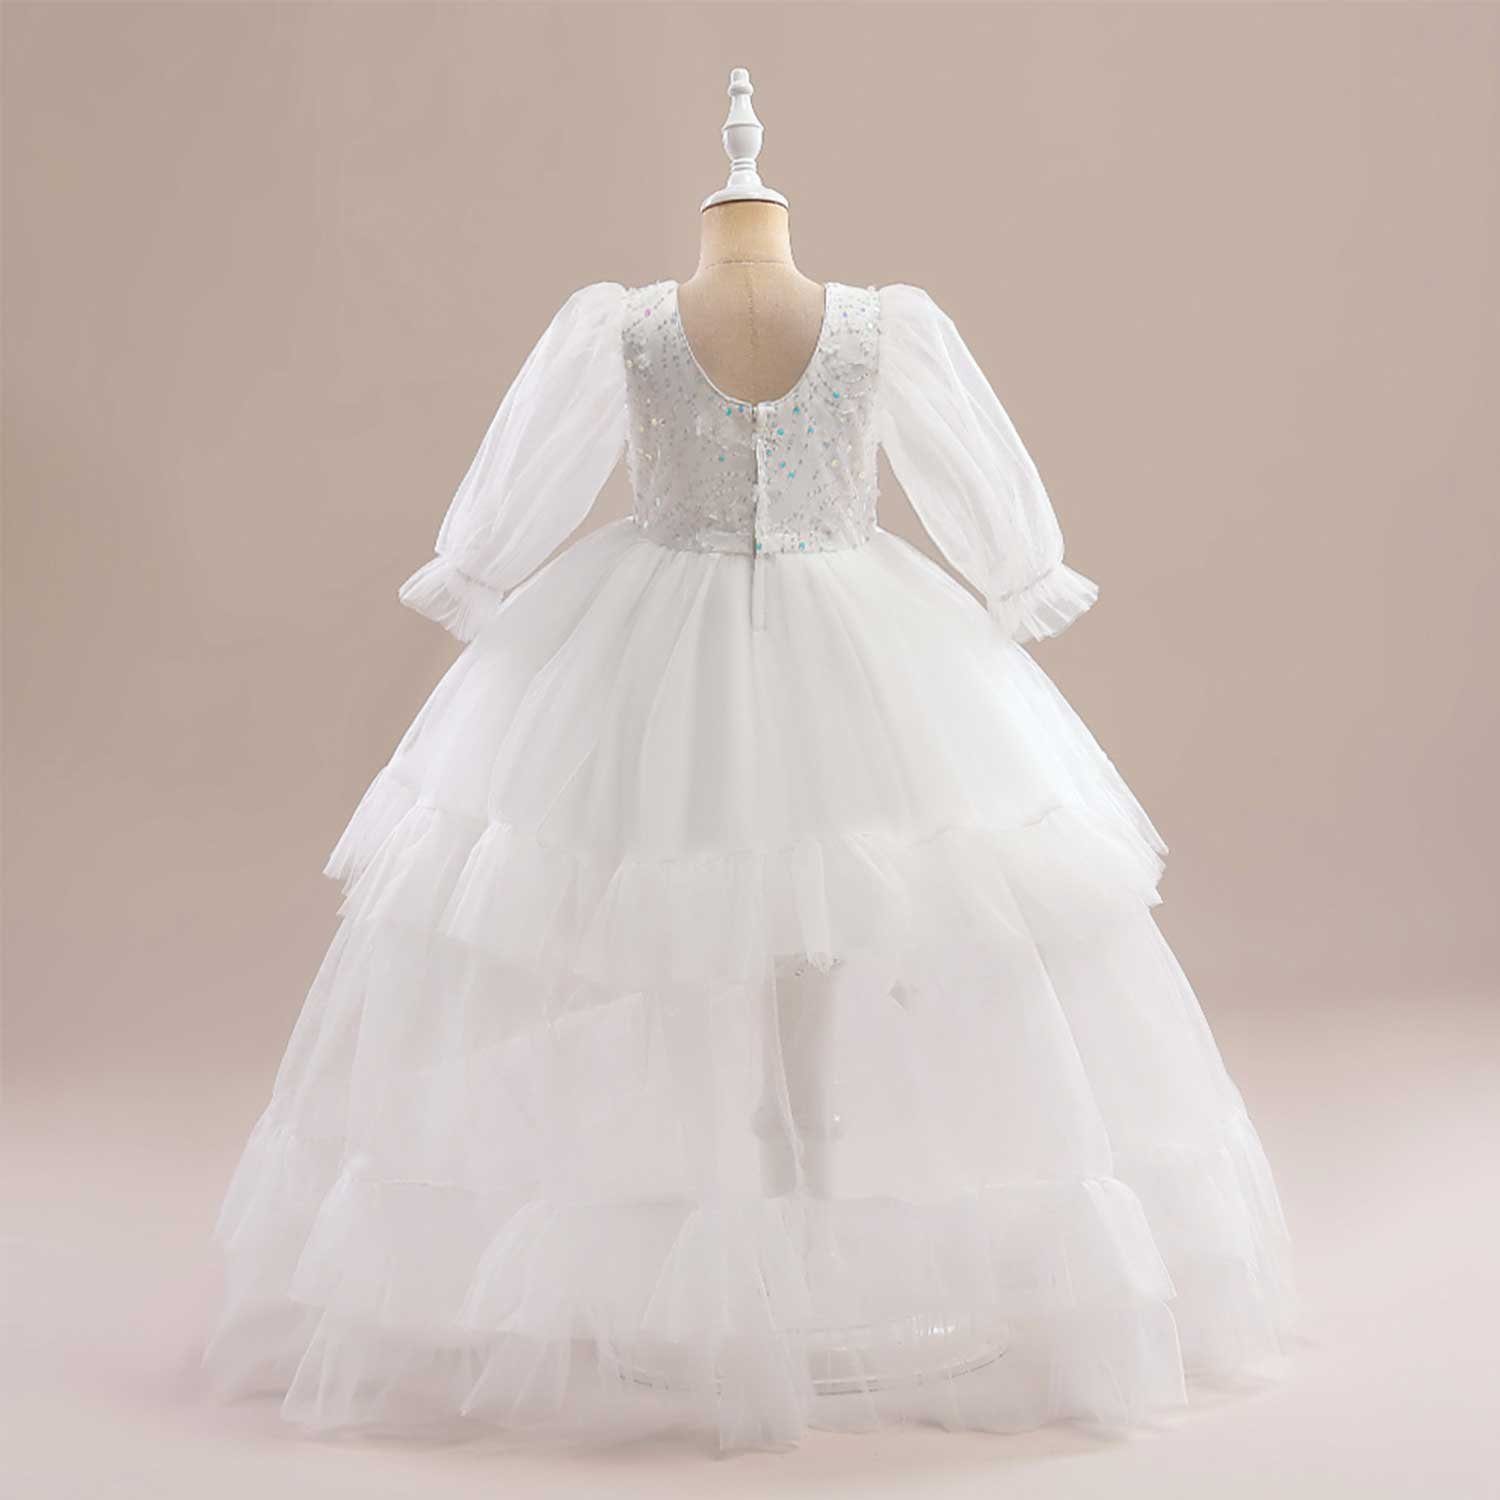 Abendkleid Daisred Prinzessinnenkleider Rosa Erstkommunionkleid Weiß Ballkleid